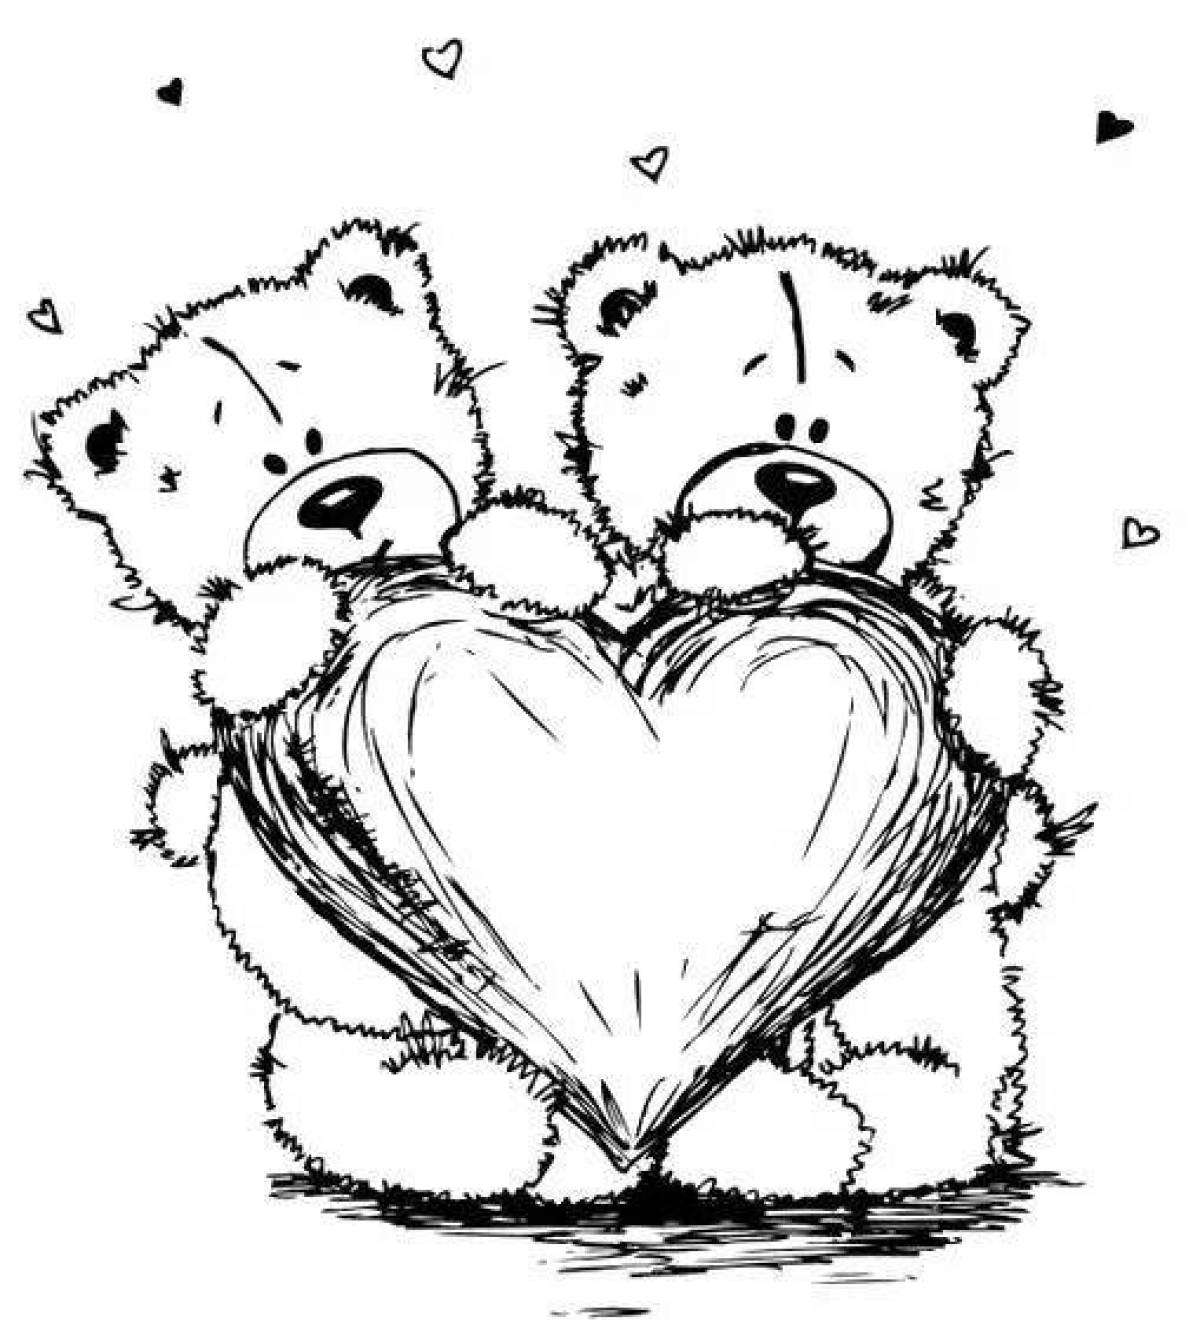 Раскраска мишка Тедди с сердцем